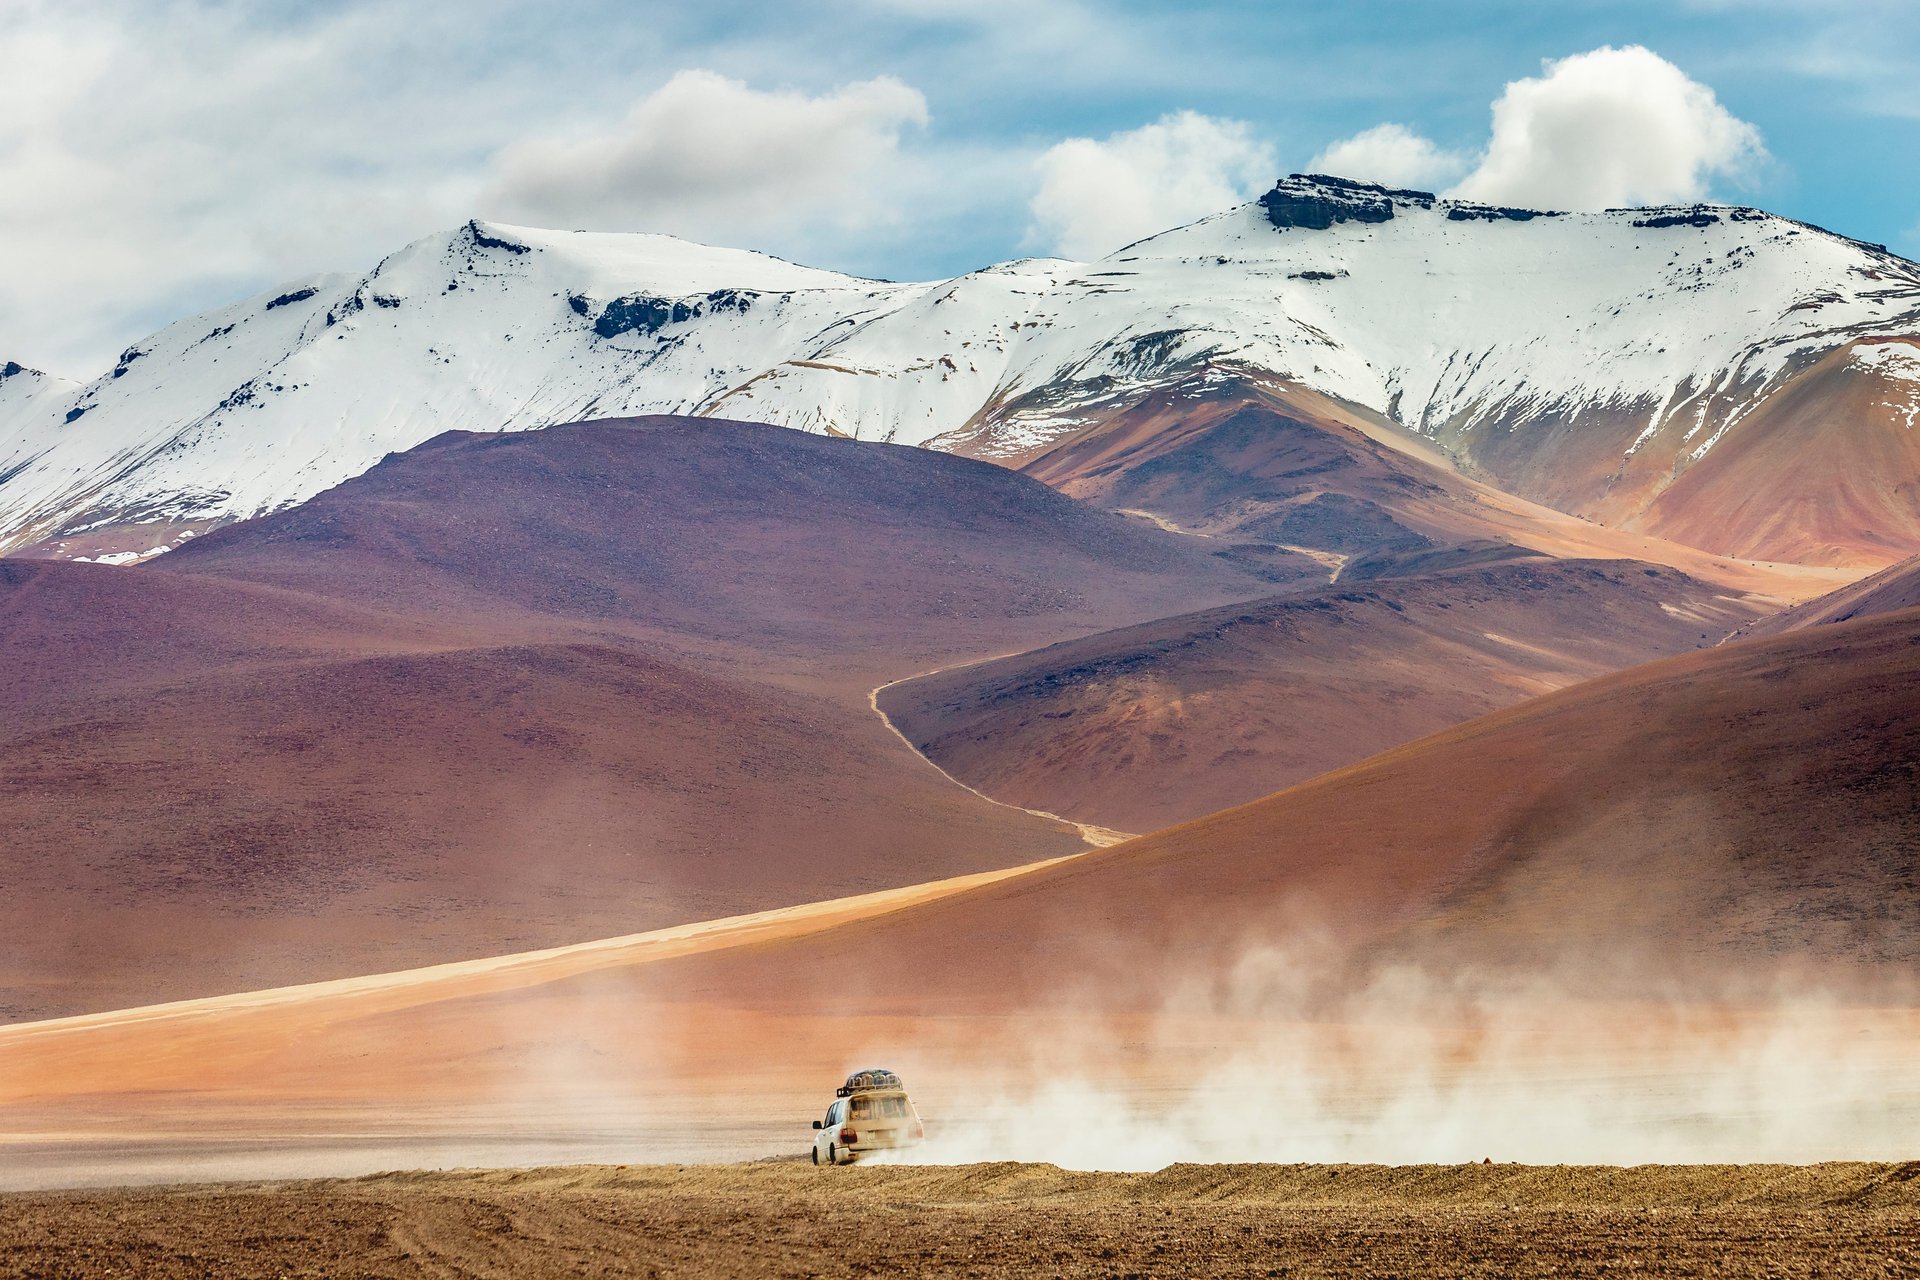 Voiture traversant une route de terre dans le désert d'Atacama, Bolivie